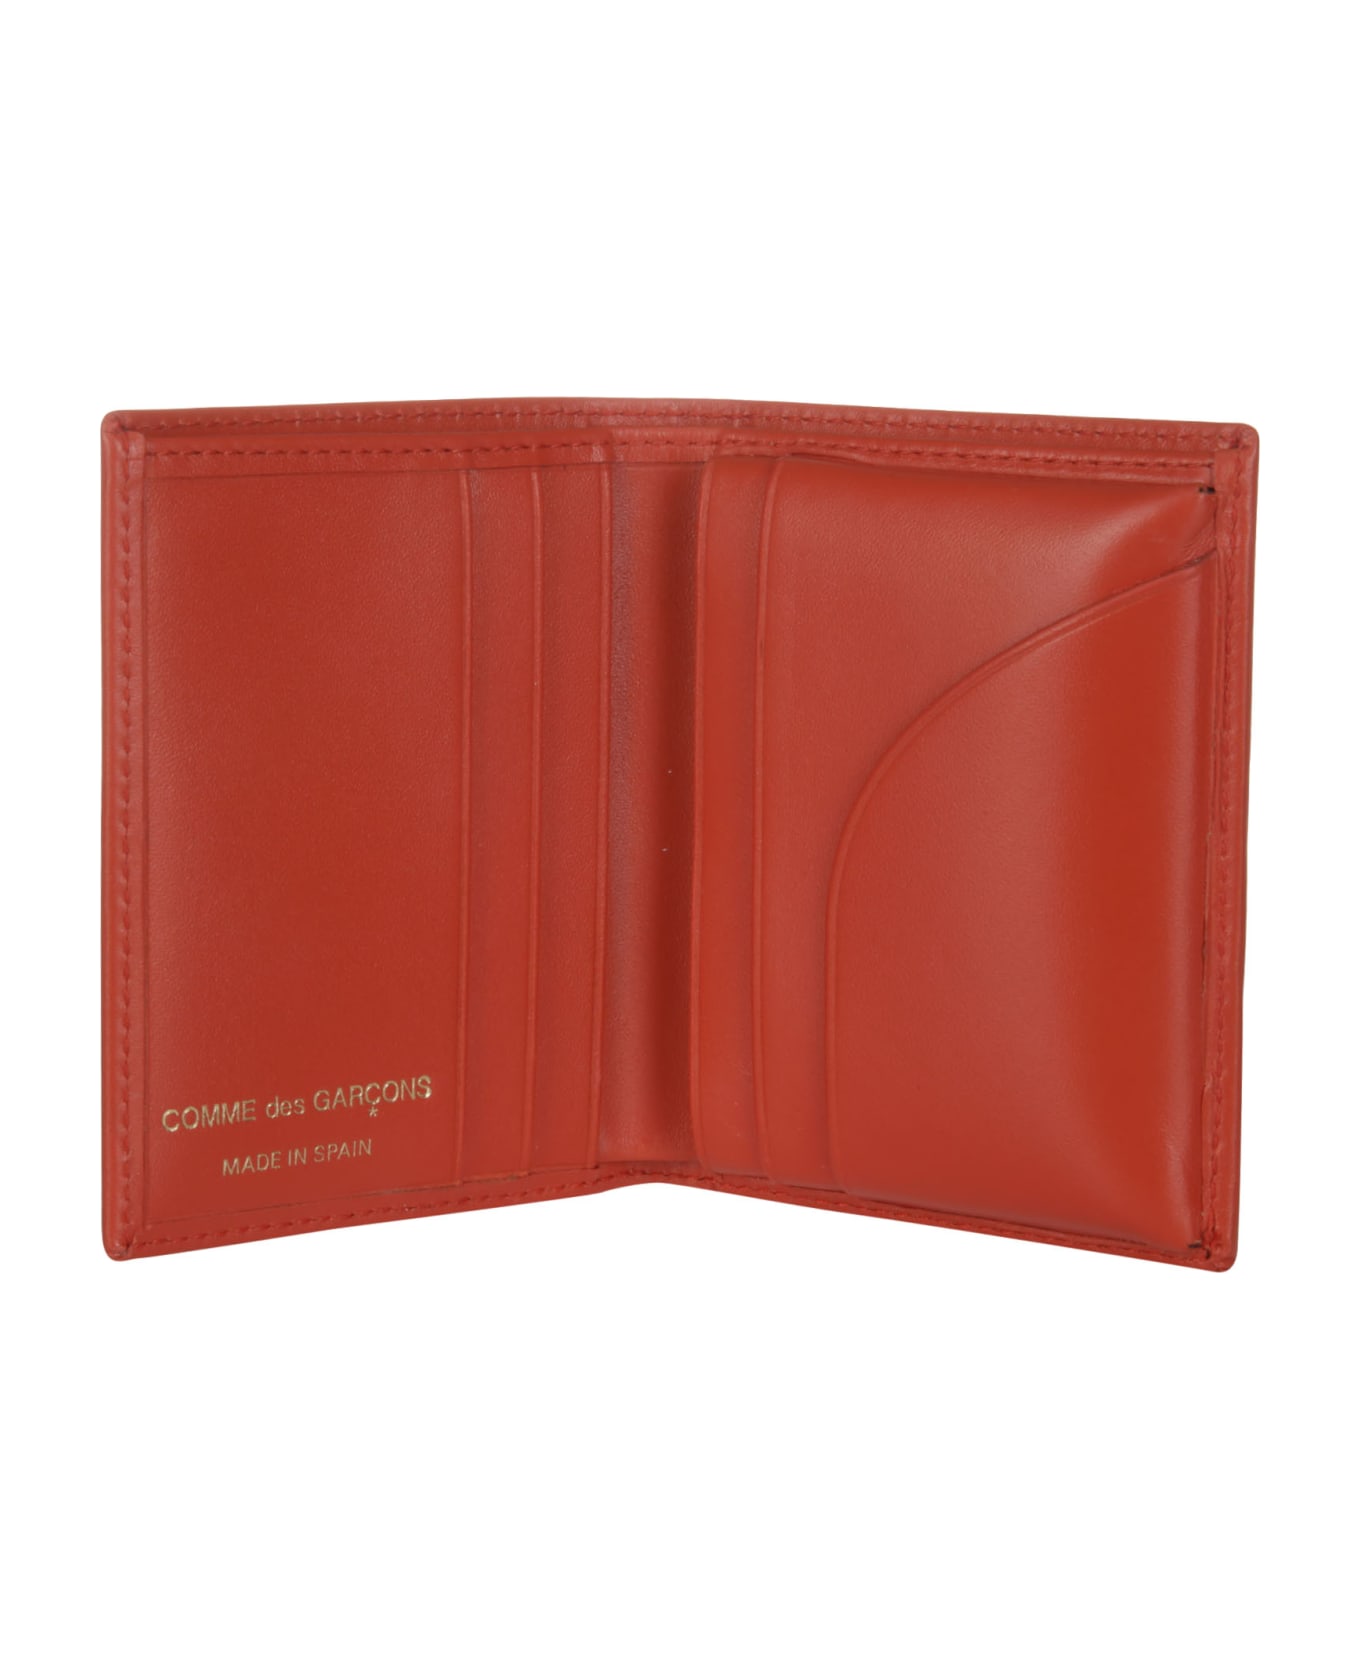 Comme des Garçons Wallet Classic Leather Line A - ORANGE